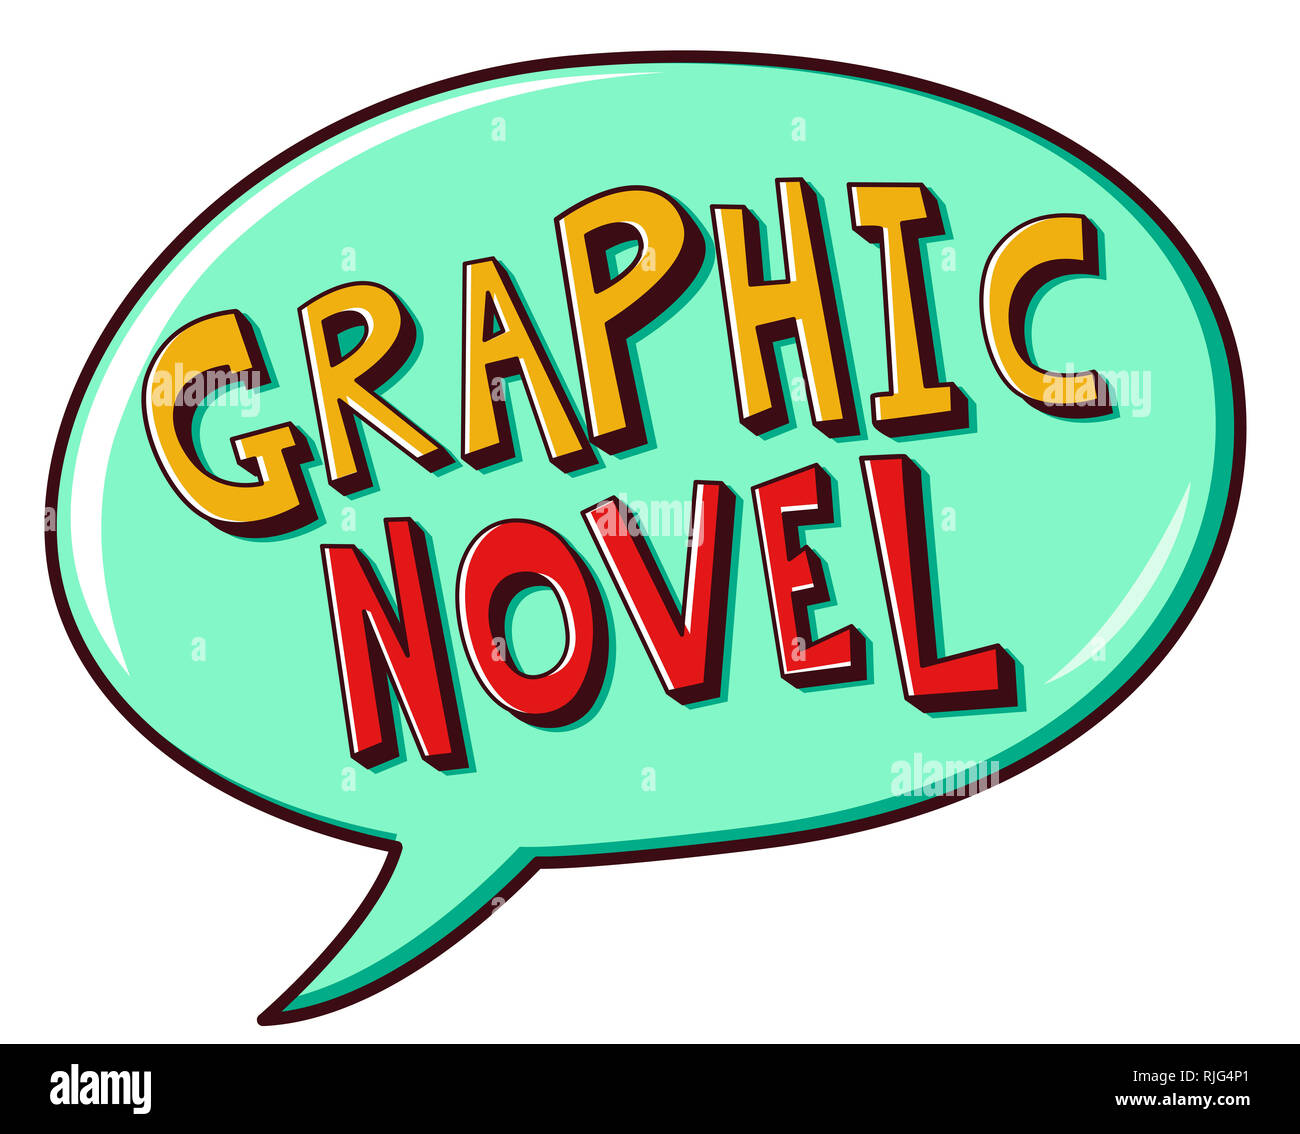 Ilustración de la novela gráfica de diseño de letras dentro de un discurso de burbuja Foto de stock